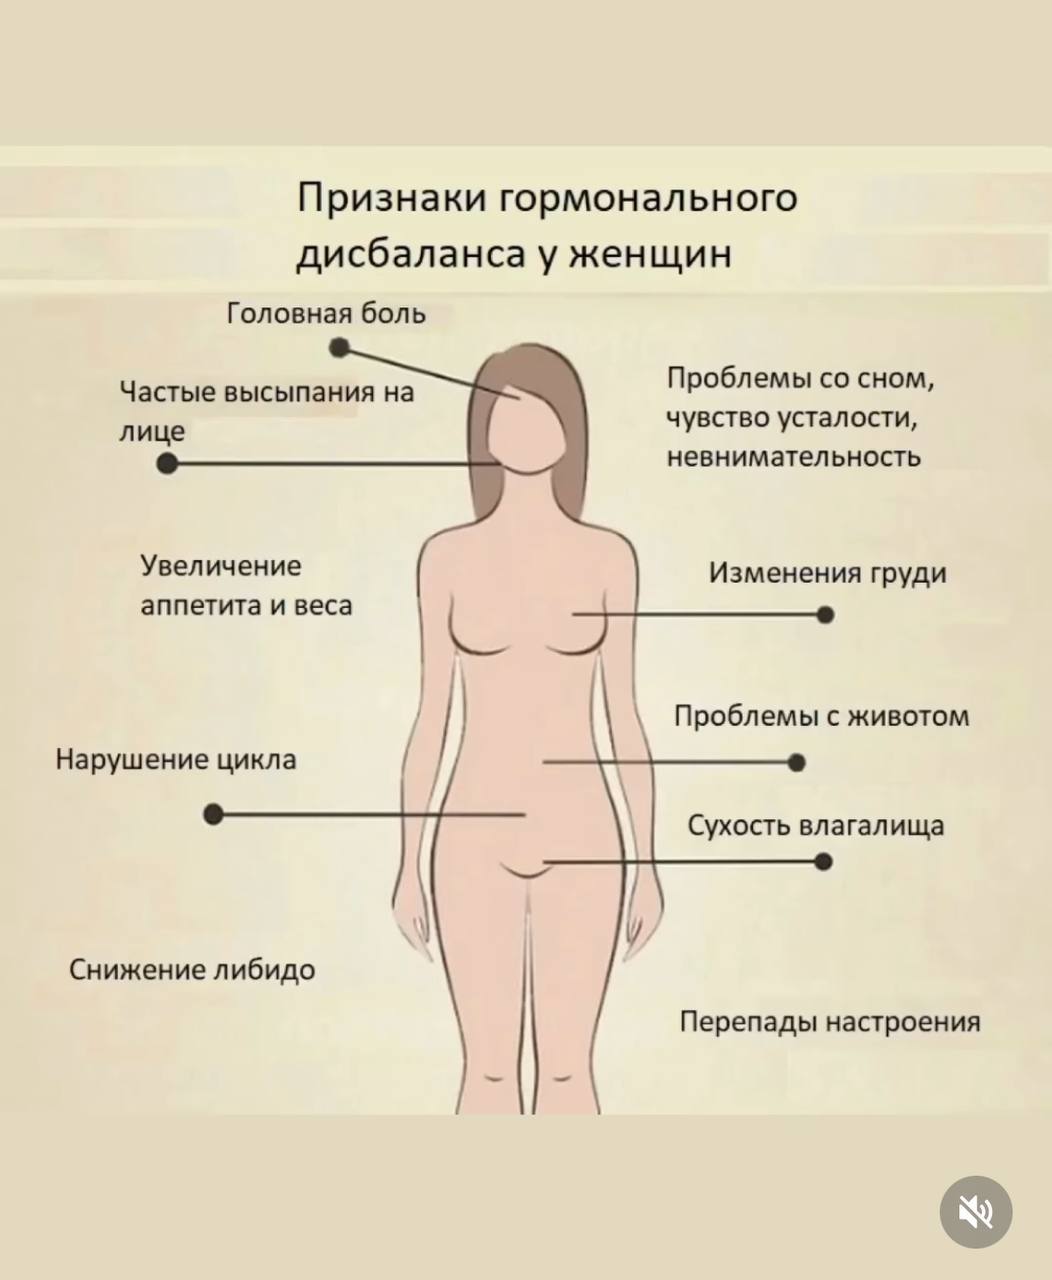 изменение груди с возрастом у женщин фото 13